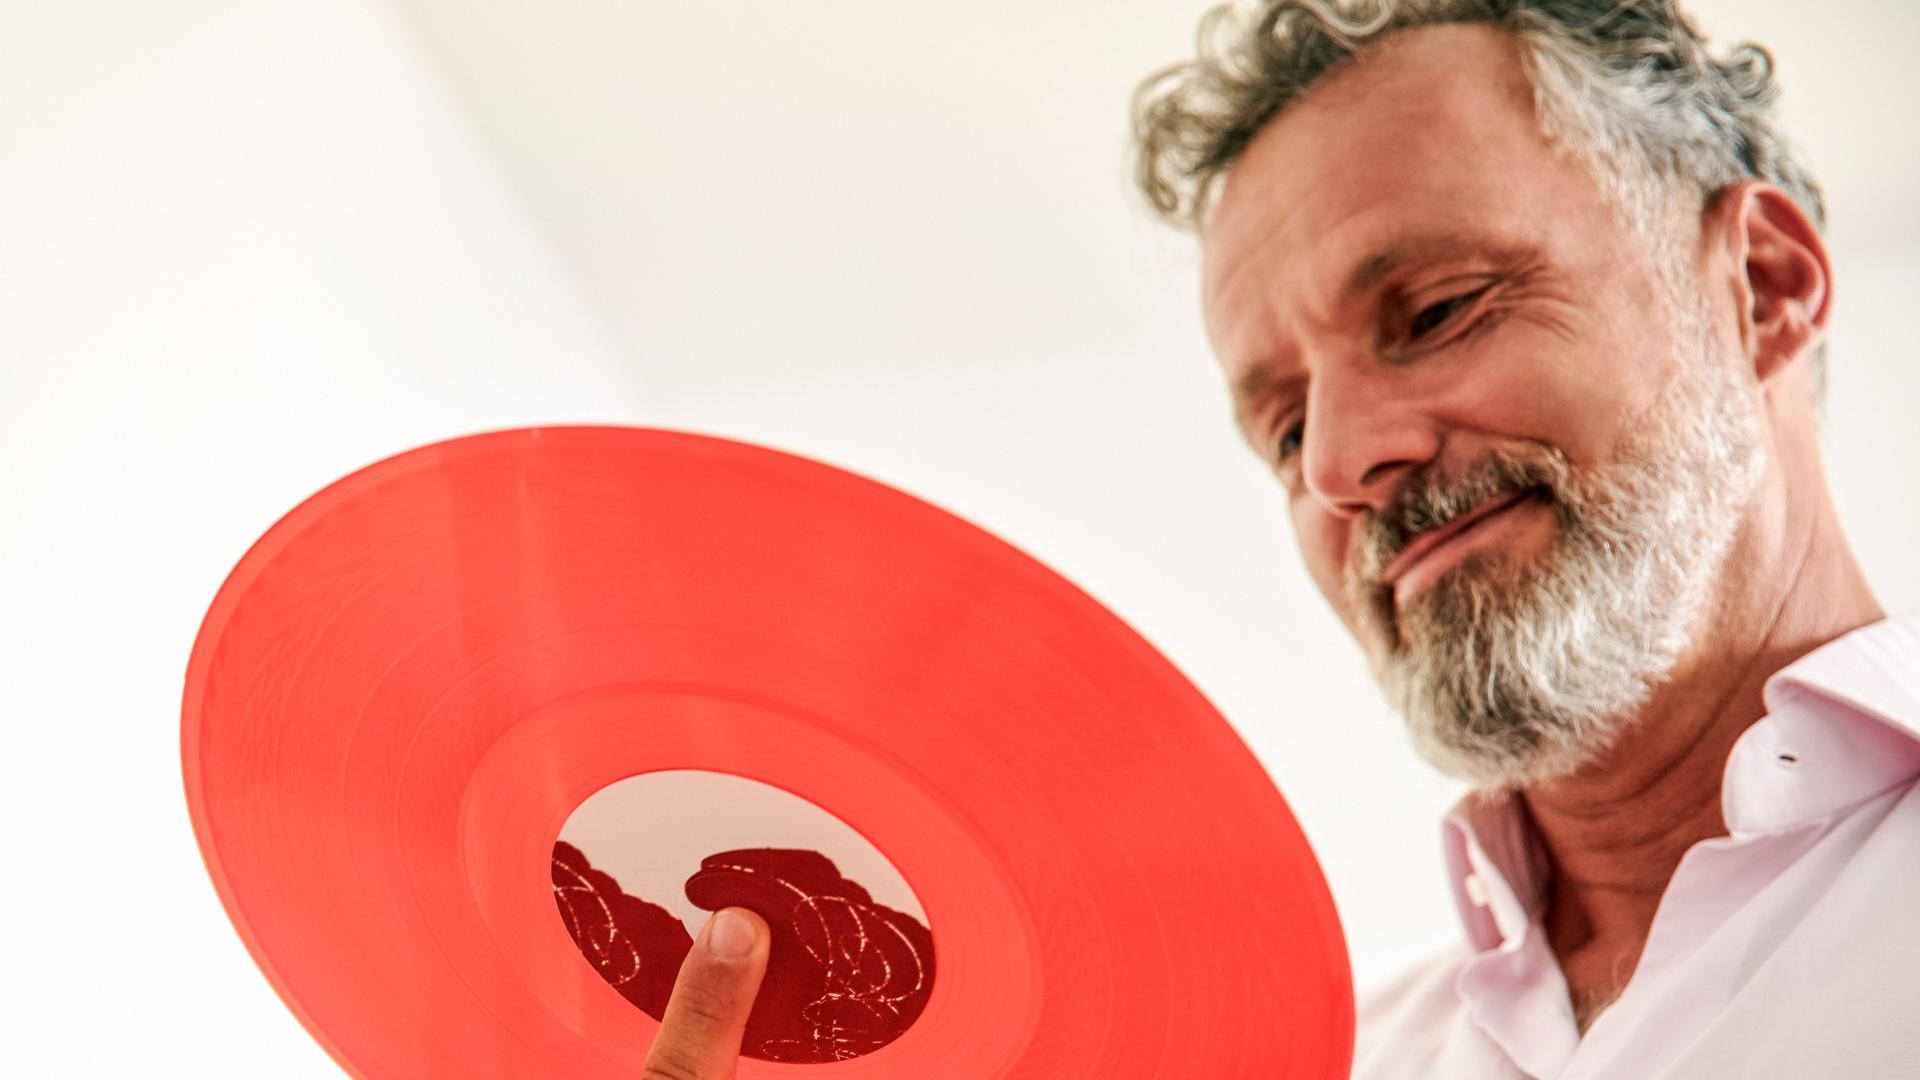 Mann im mittleren Alter lächelt und schaut auf eine rote Schallplatte auf seiner Hand. Von unten aus der Froschperspektive fotografiert.